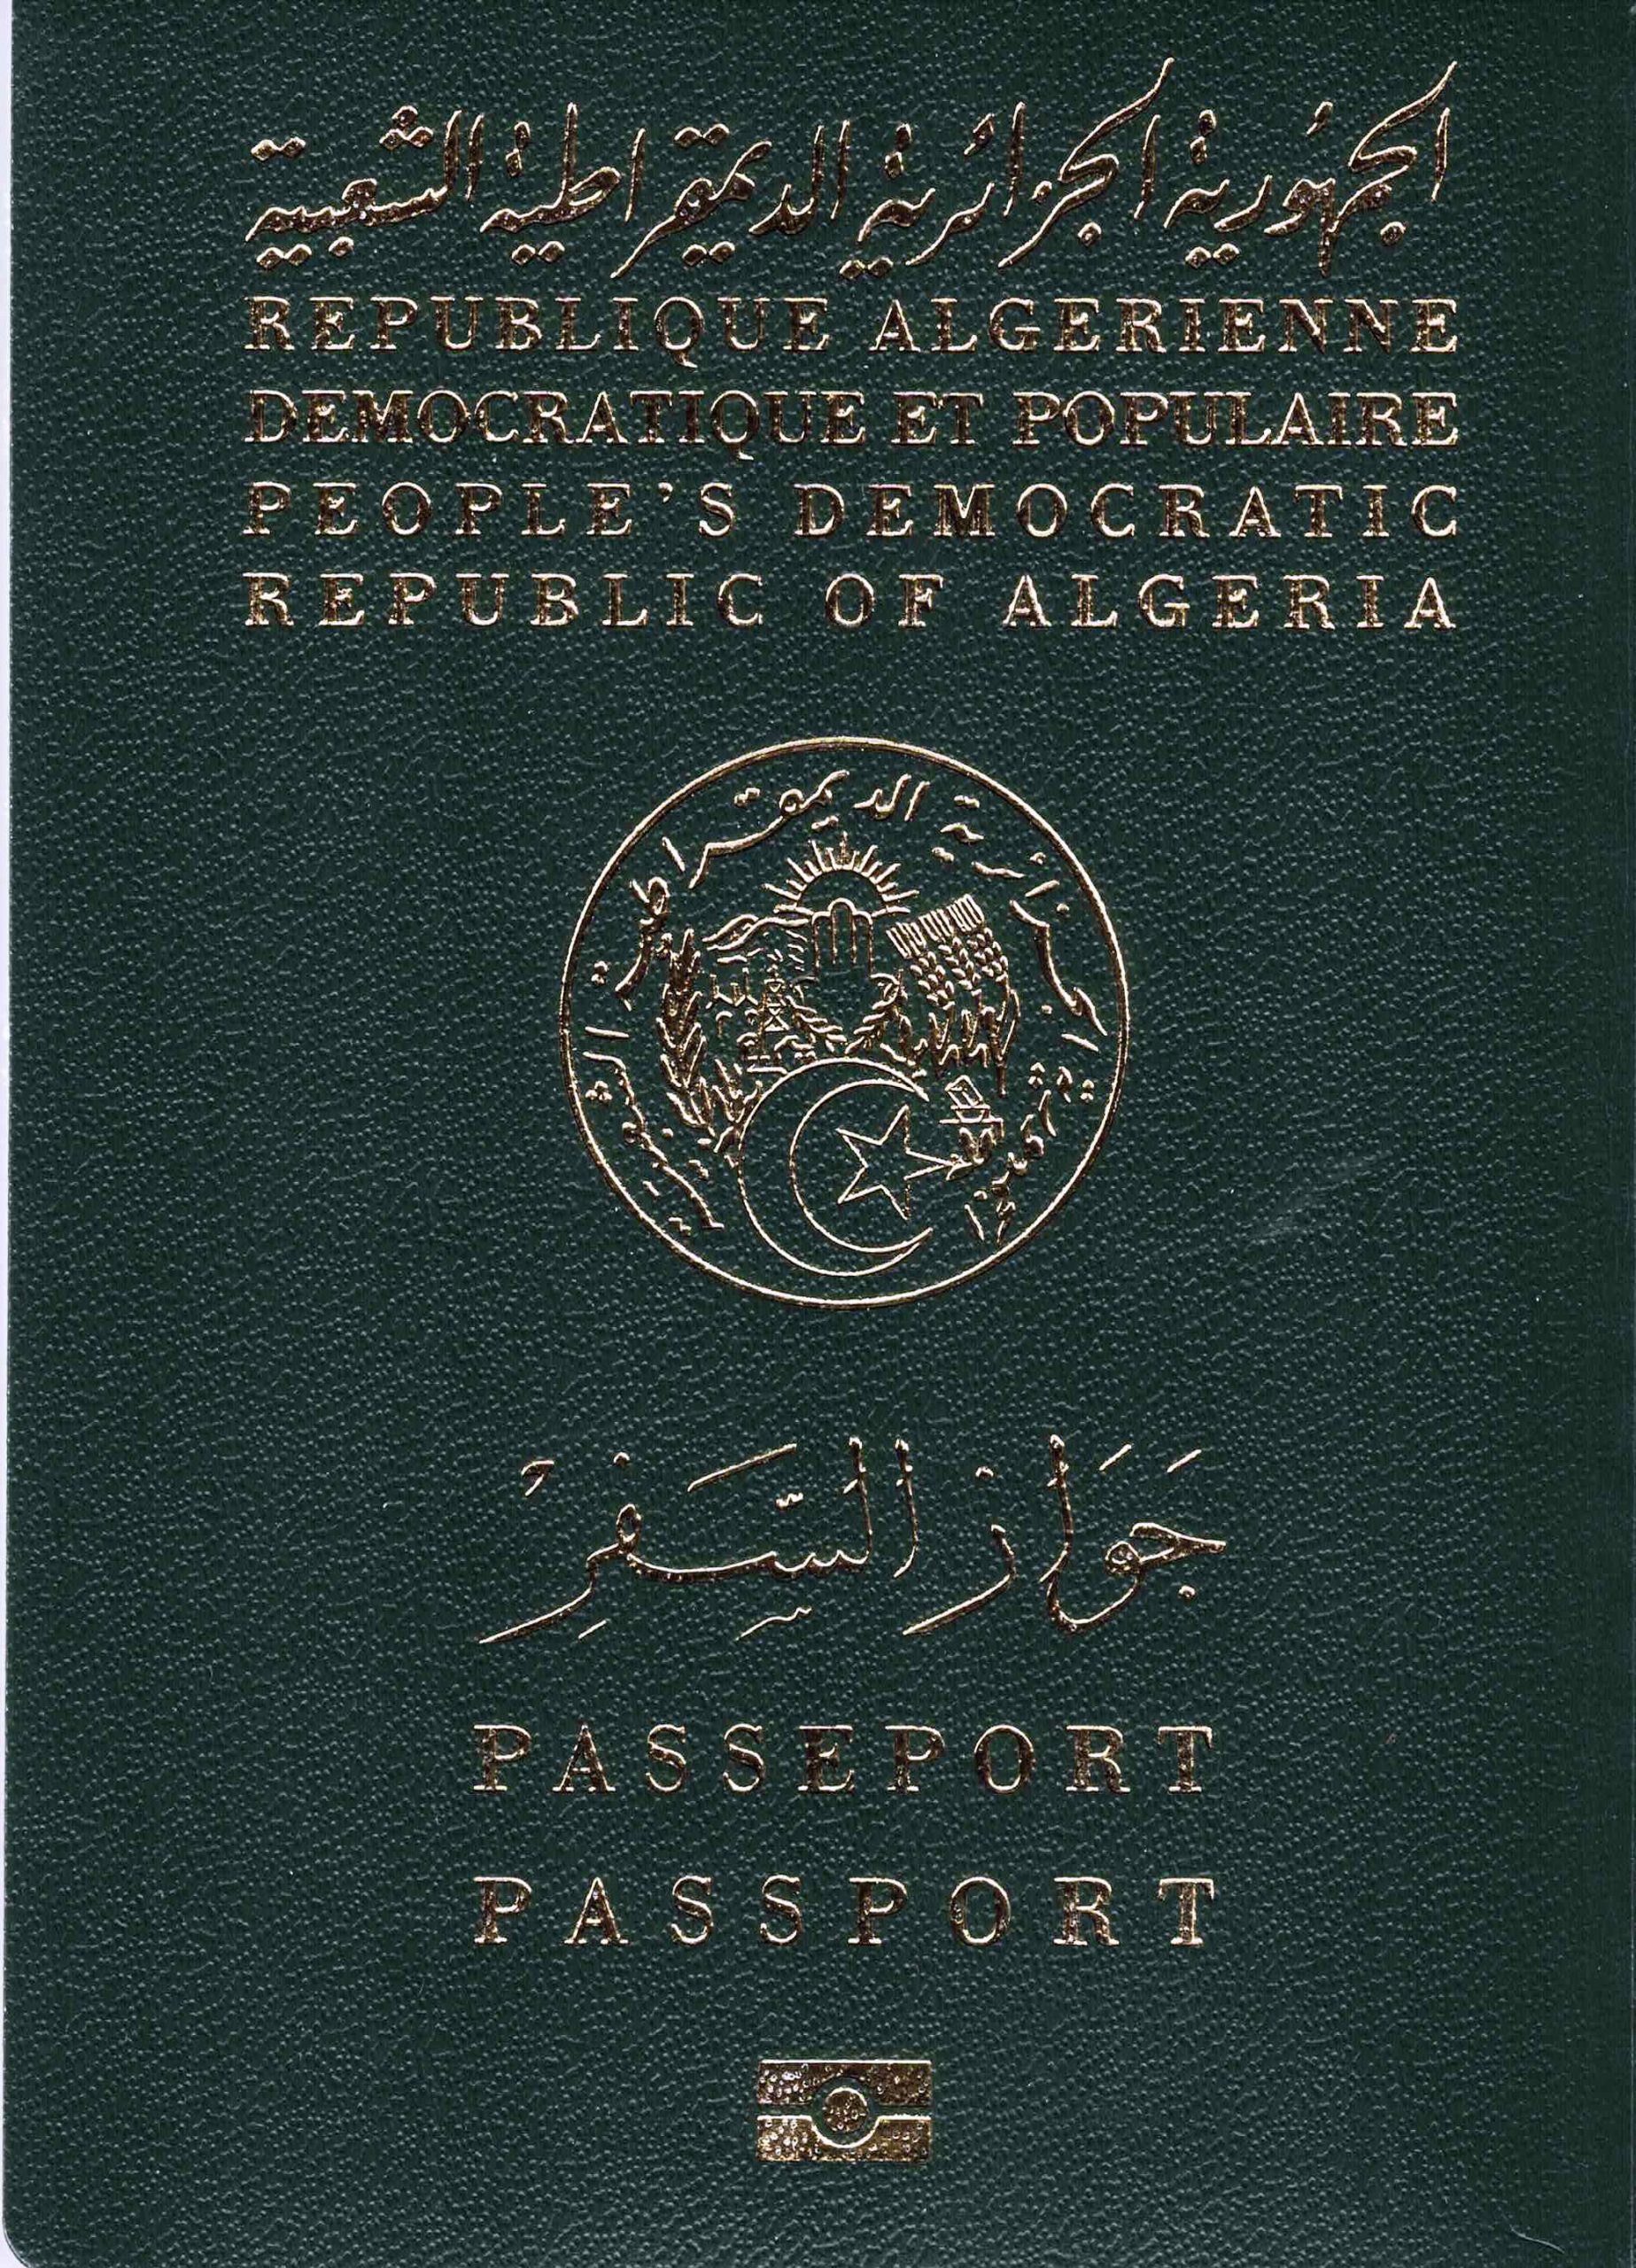 Passeport biométrique algérie